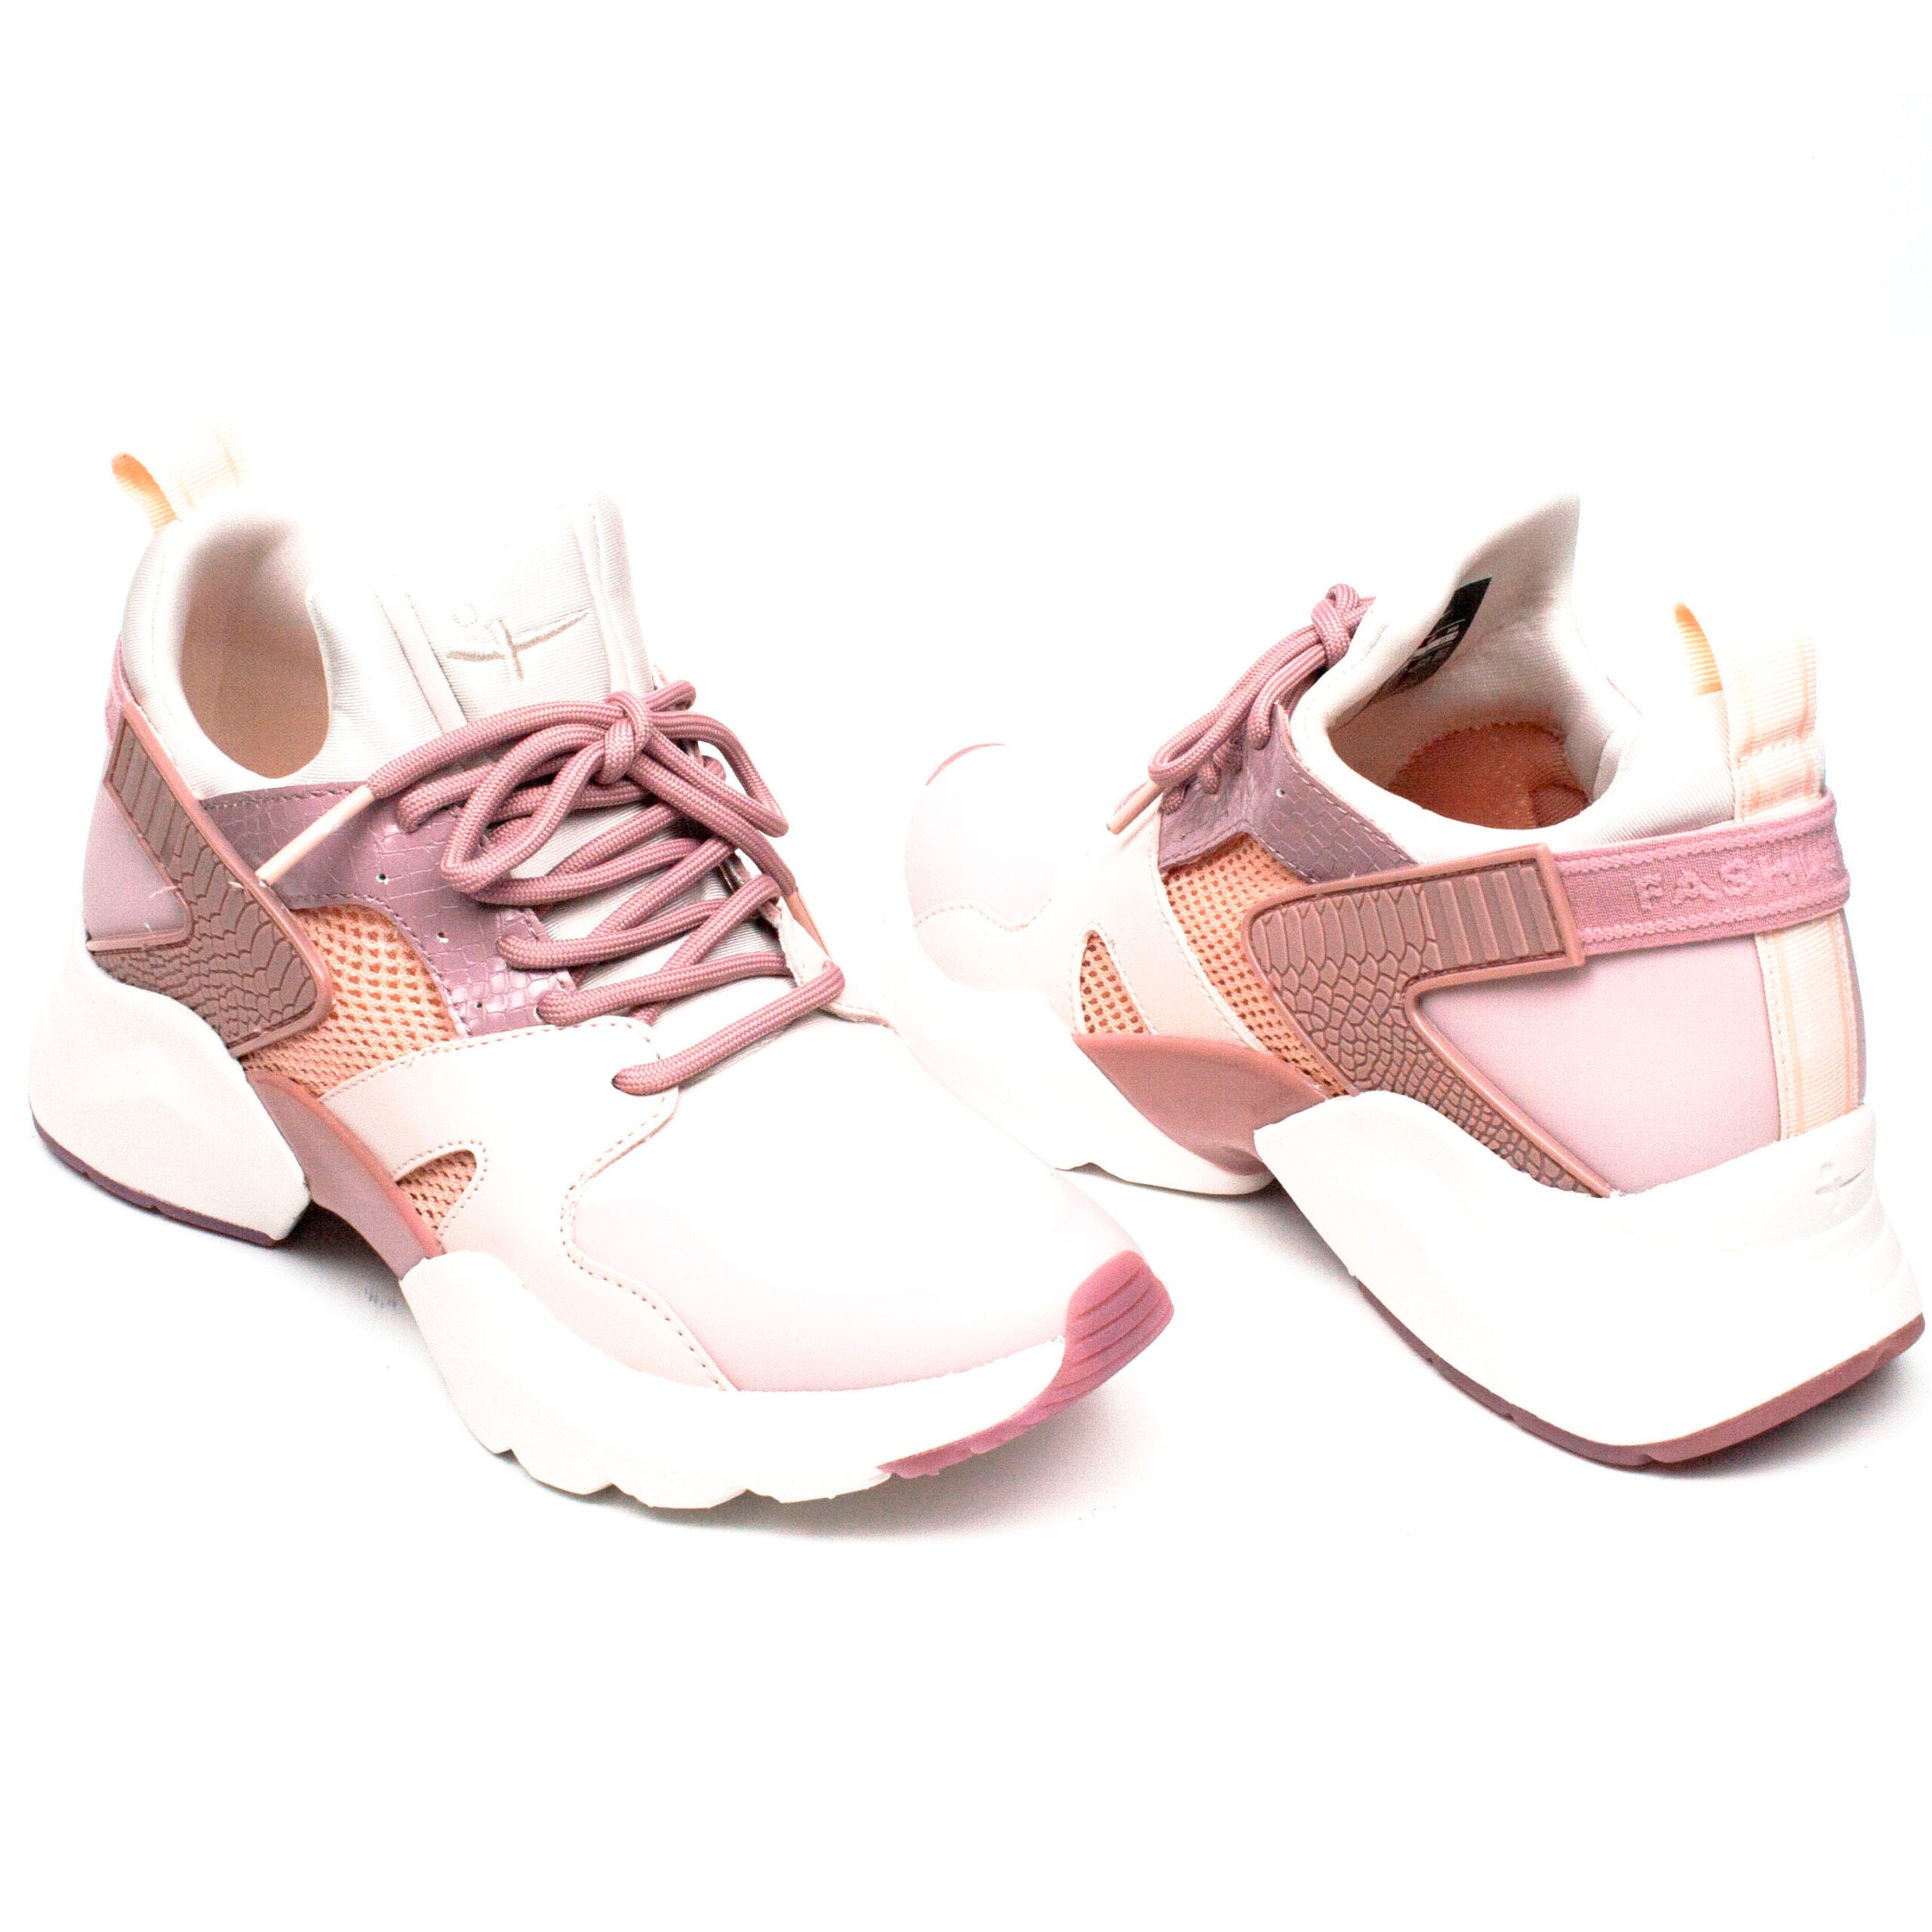 Tamaris pantofi dama Sneakers Rose Comb roz ID1922-ROZ